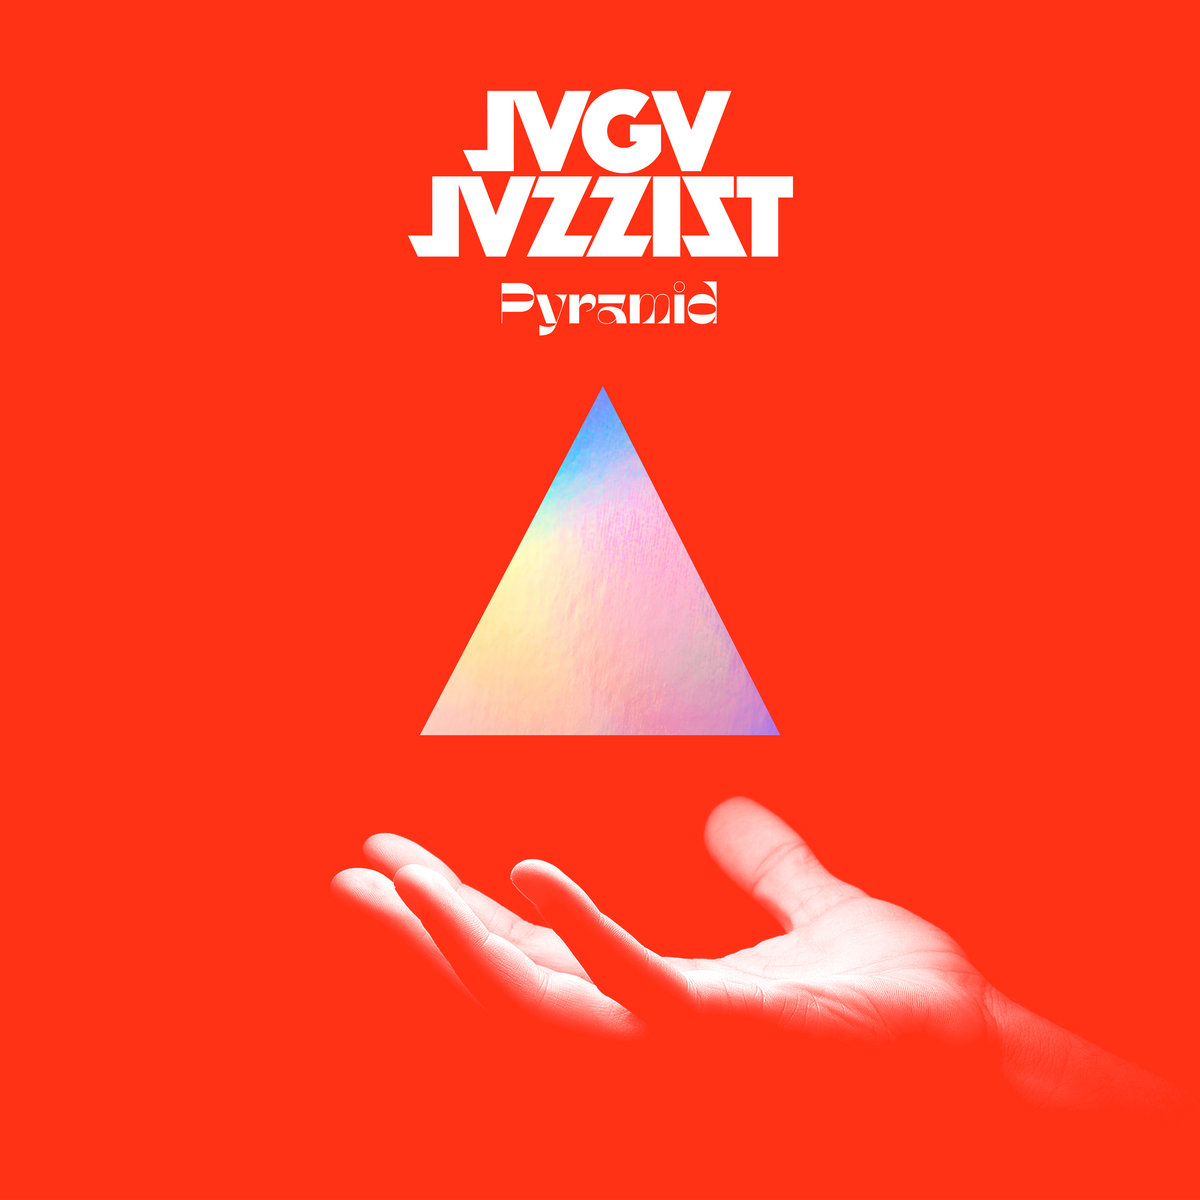 Jaga Jazzist - Pyramid (2020) [FLAC 24bit/44,1kHz]